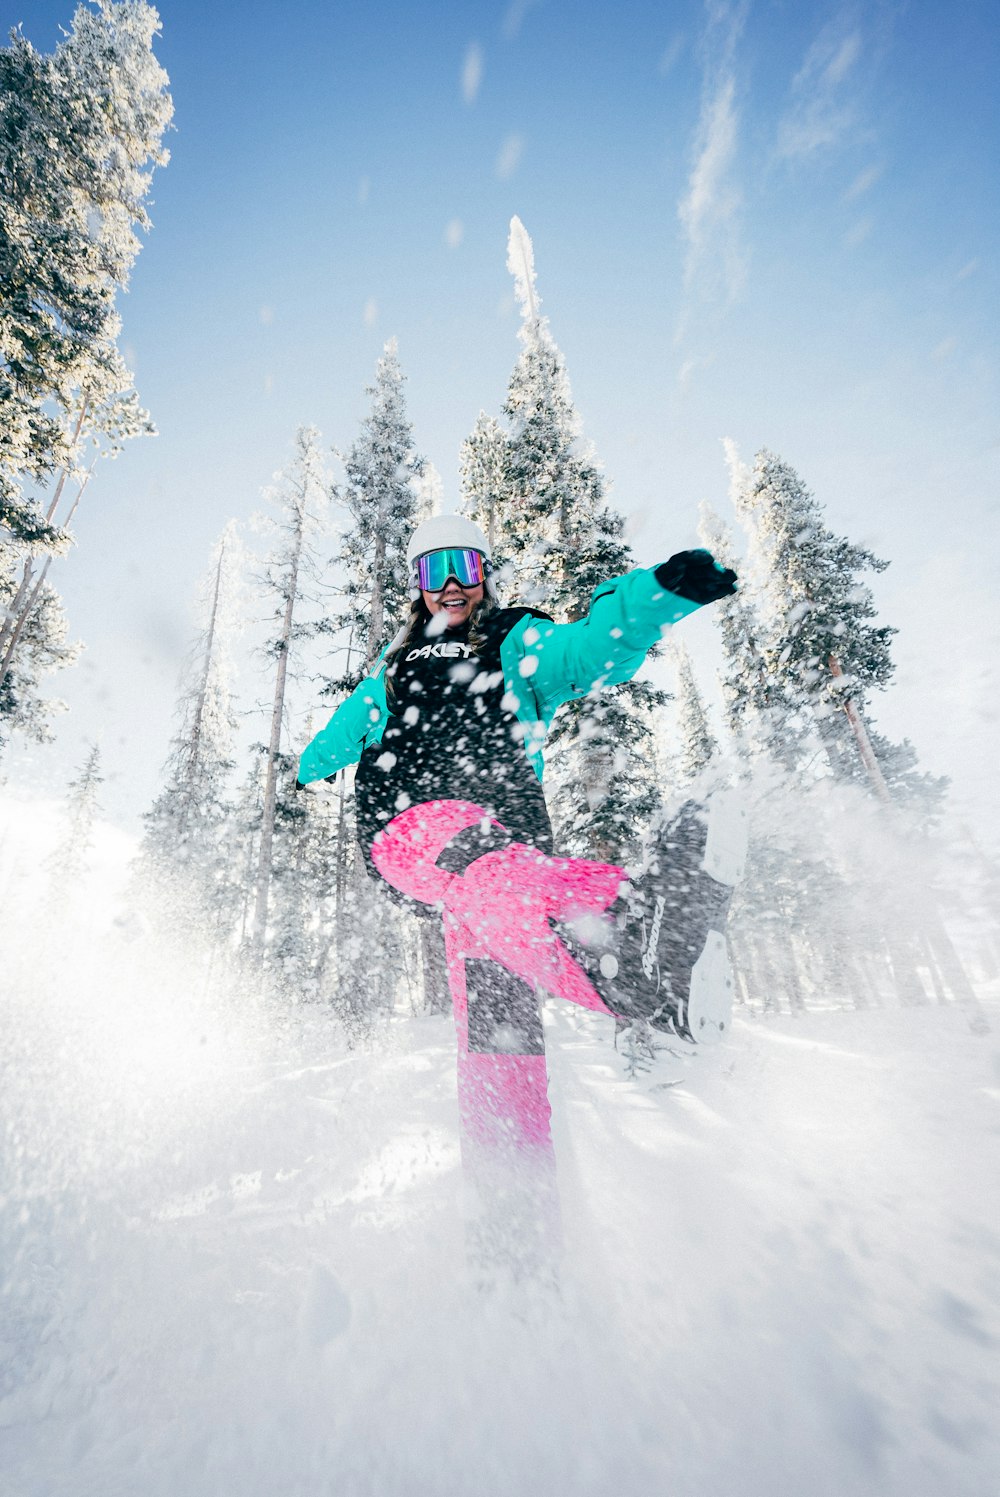 Persoon in blauwe jas en roze broek die overdag op snowboard rijdt